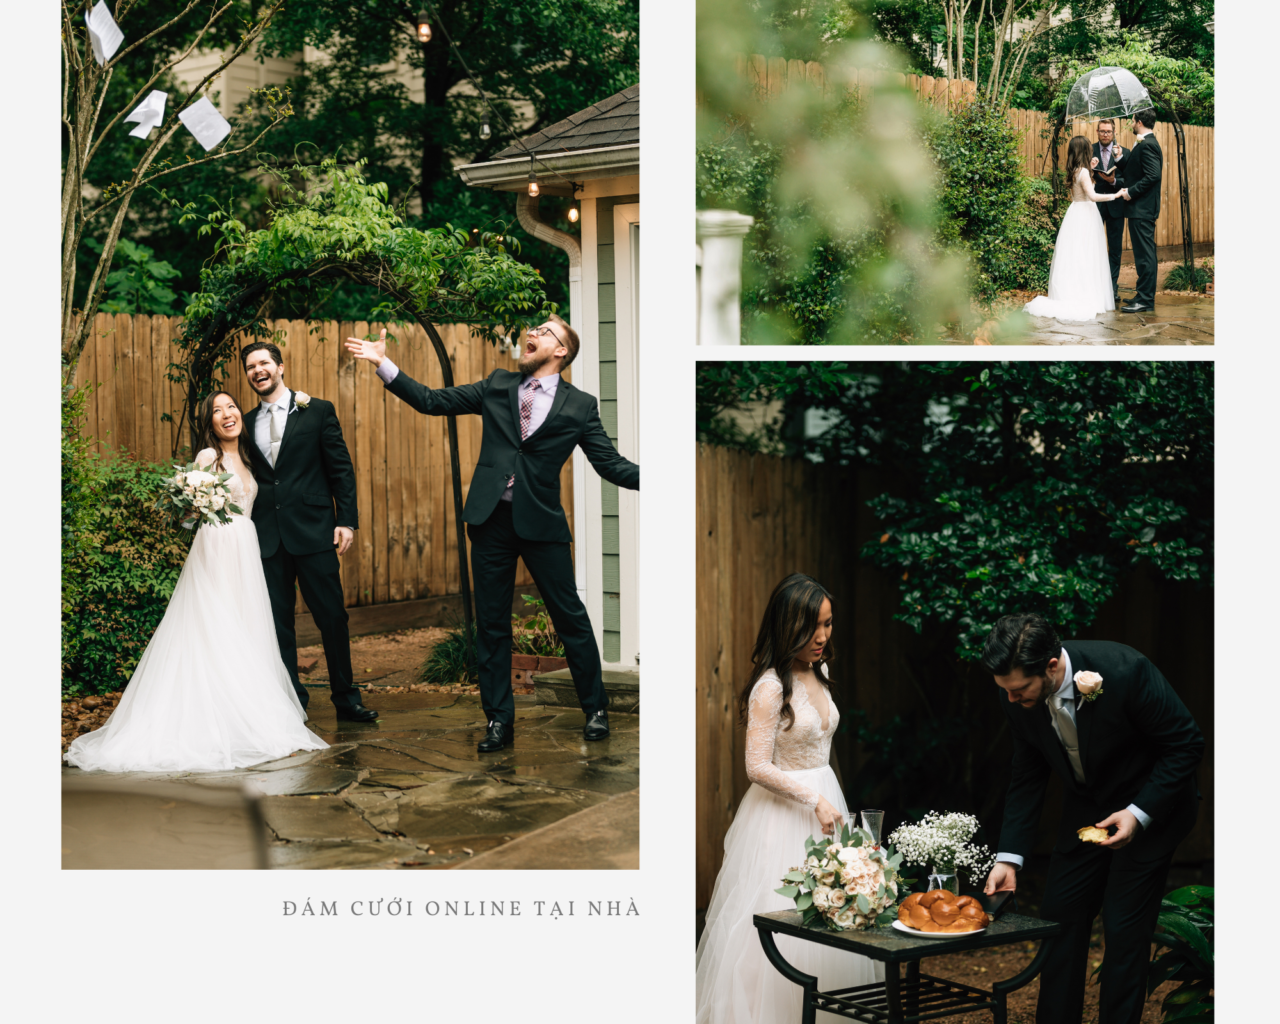 đám cưới online tại nhà được tổ chức ngoài sân vườn với sự tham dự của cô dâu chú rể và chủ hôn